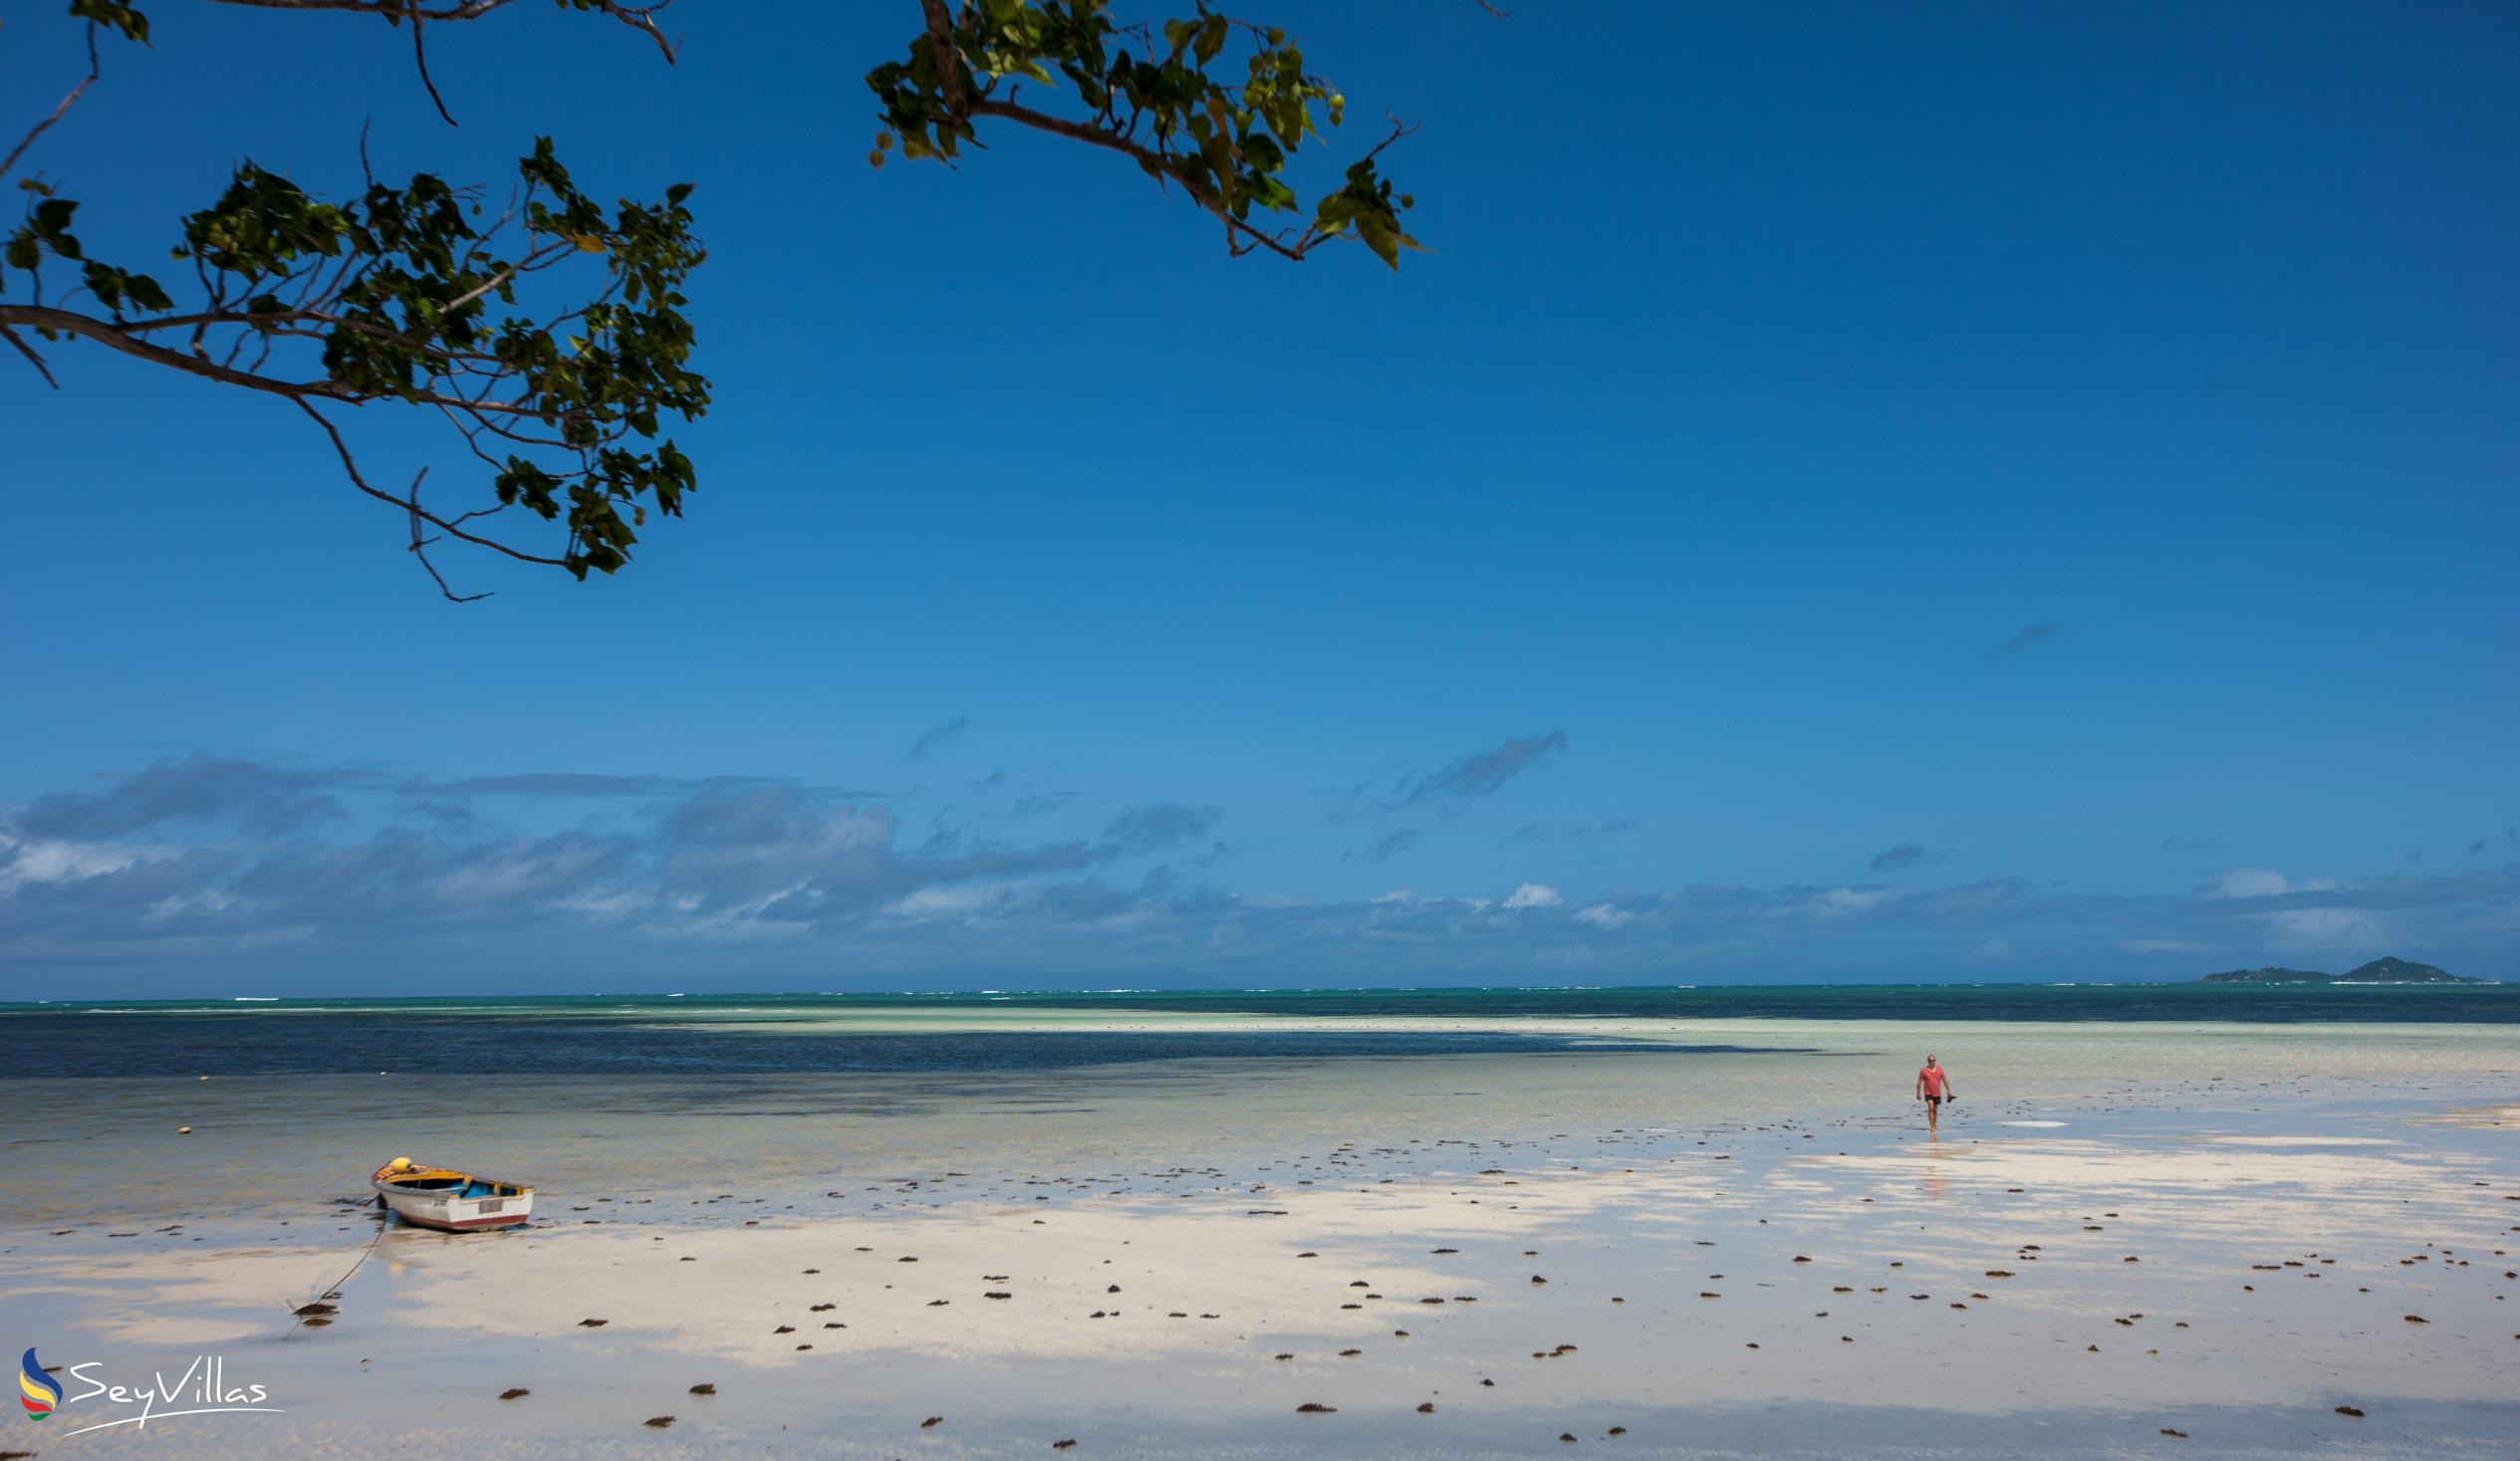 Foto 34: Cap Jean Marie Beach Villas - Strände - Praslin (Seychellen)